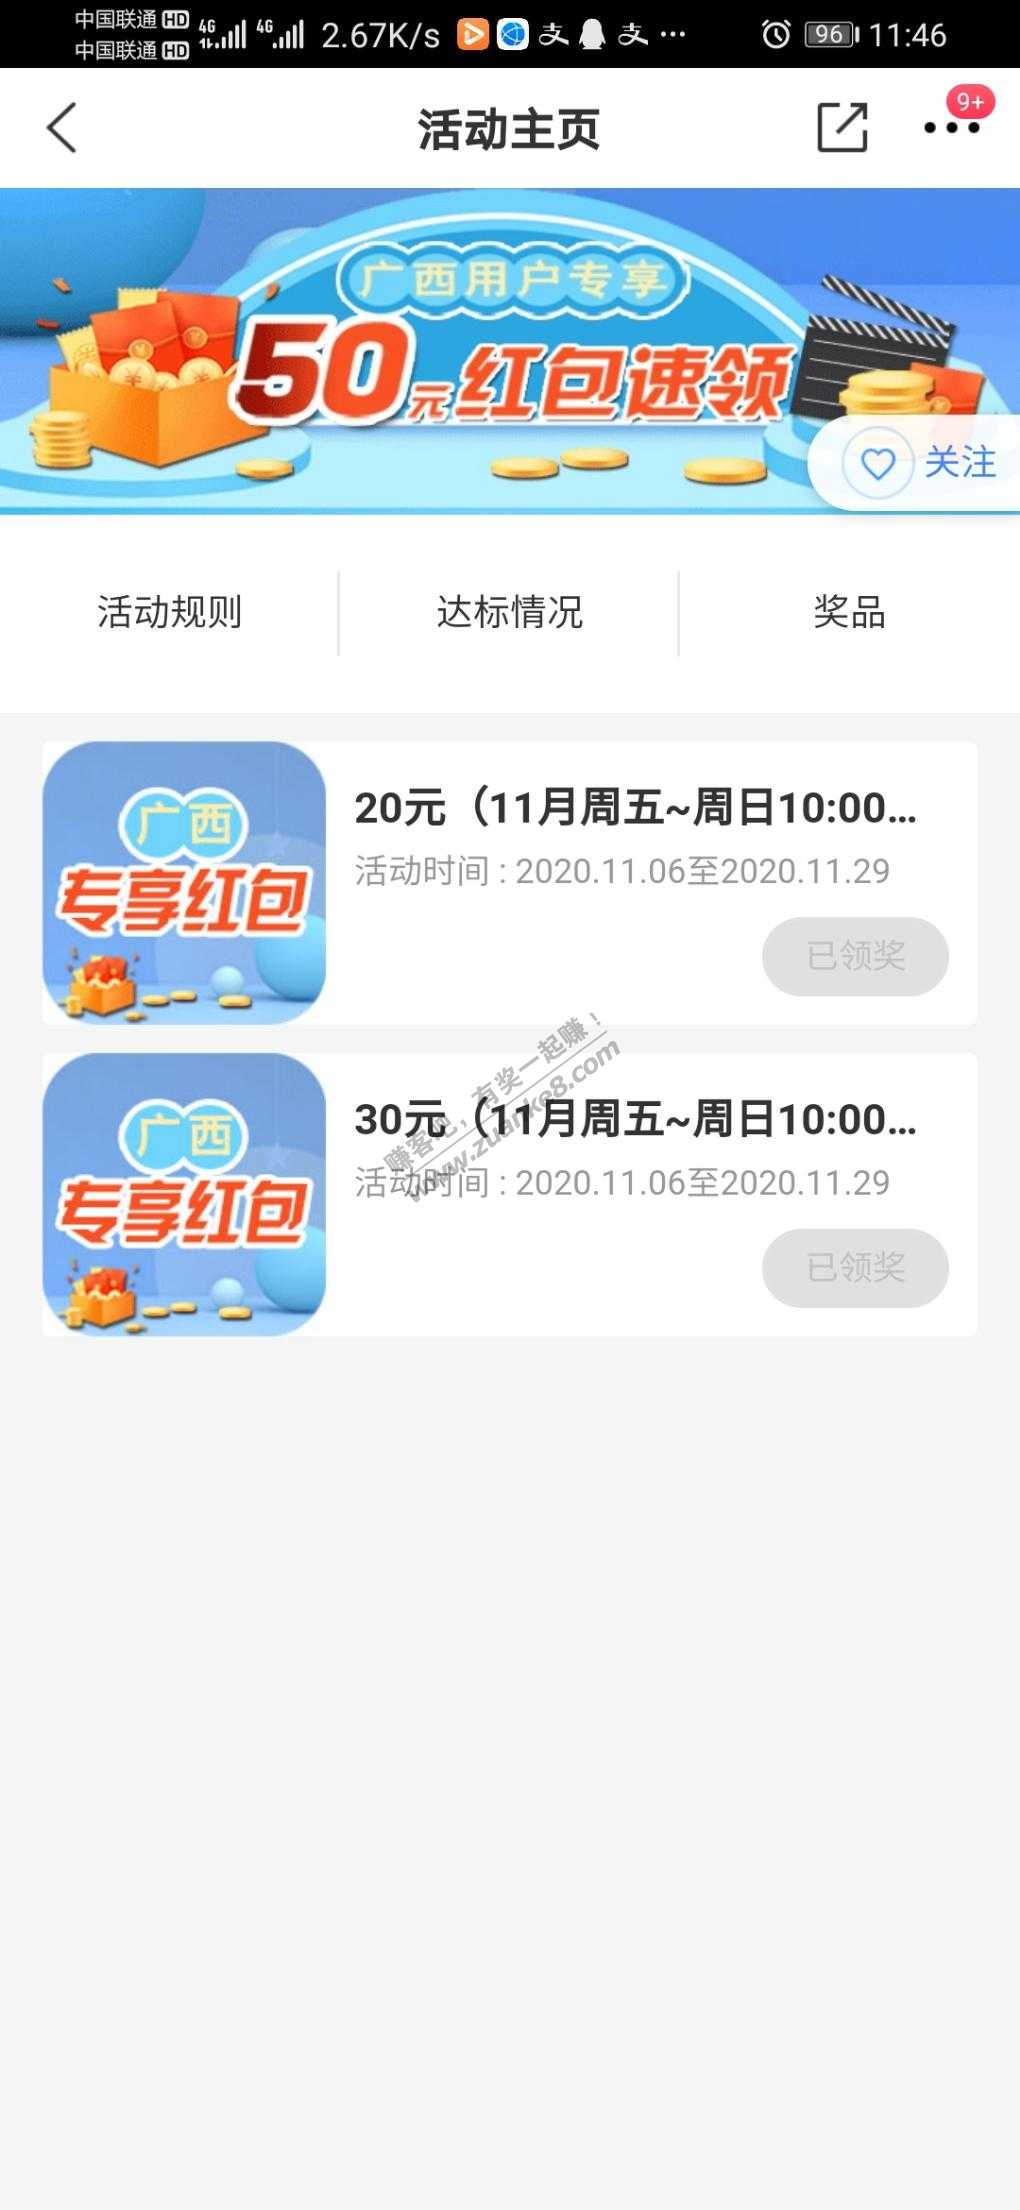 交行买单吧广西区用户每月领50红包11月的可以领了-惠小助(52huixz.com)